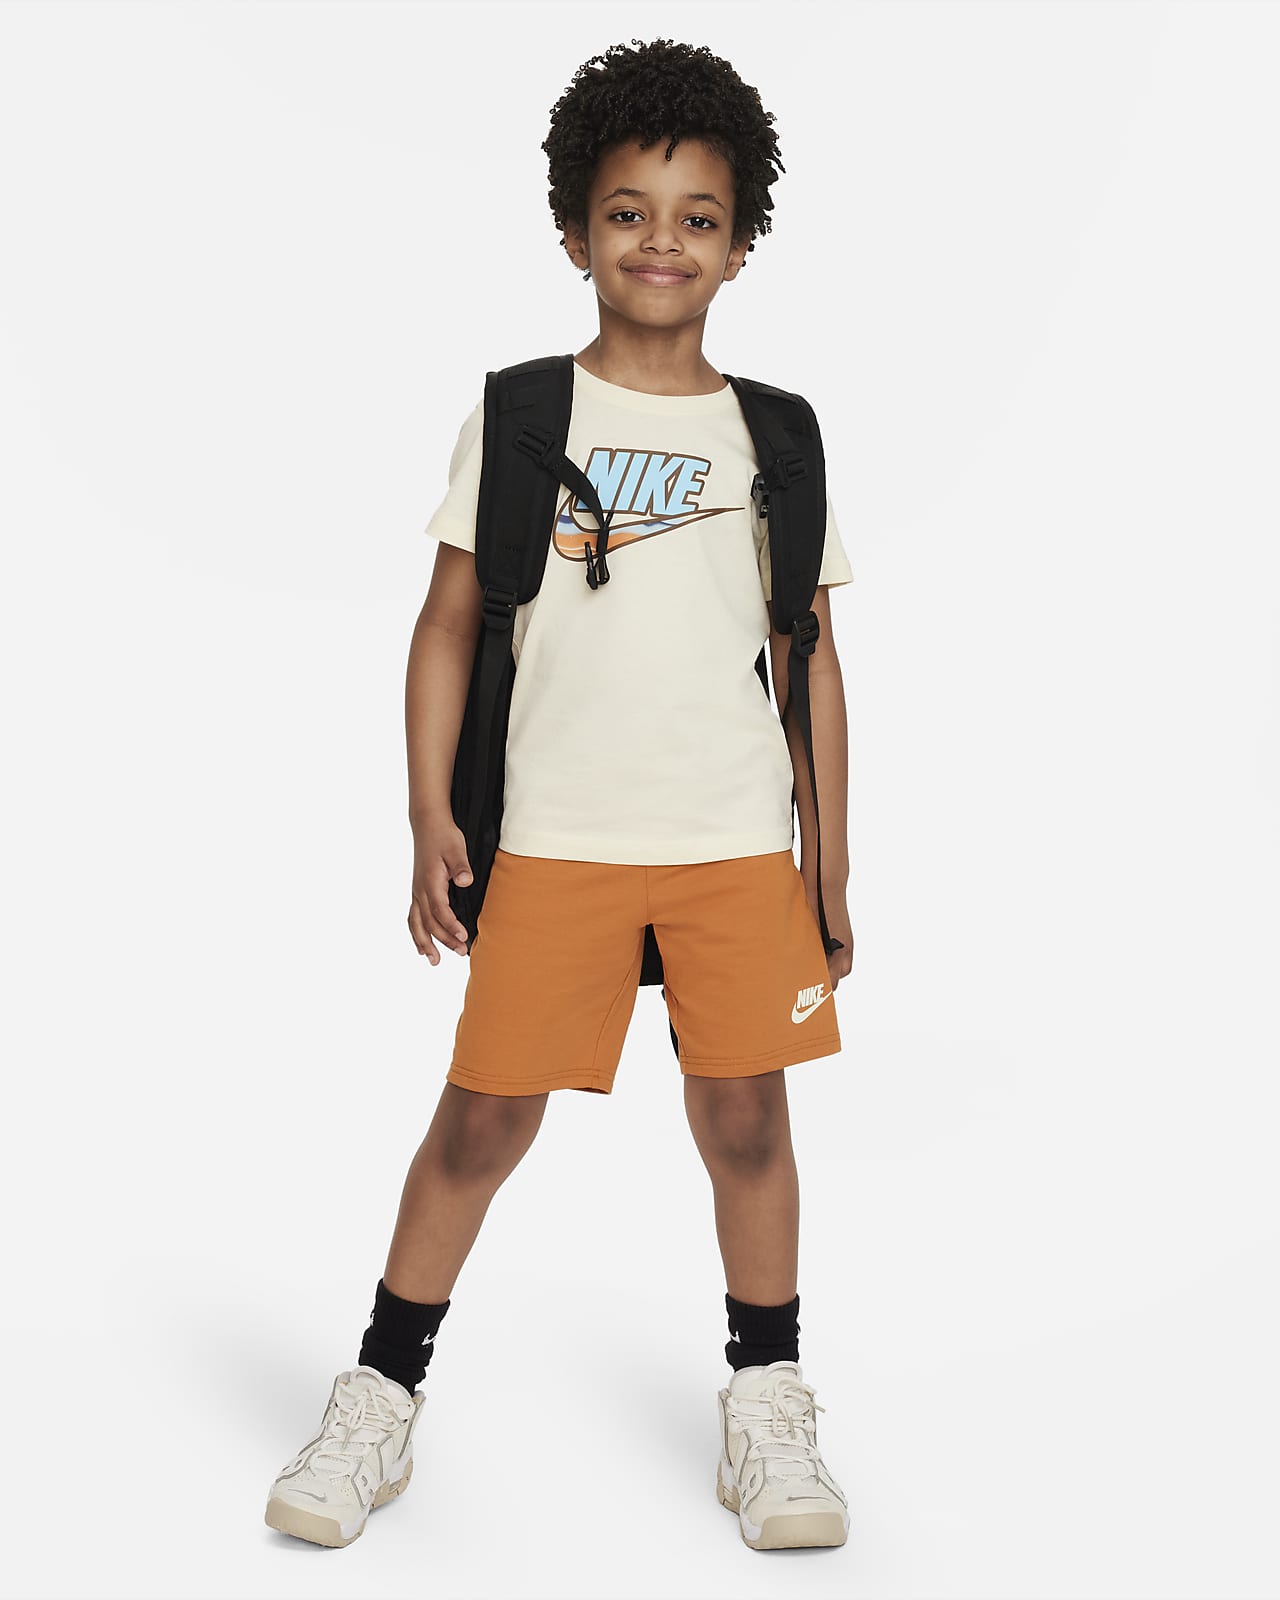 rand Aanleg Ontslag nemen Nike Sportswear Shorts Set Little Kids' 2-Piece Set. Nike.com